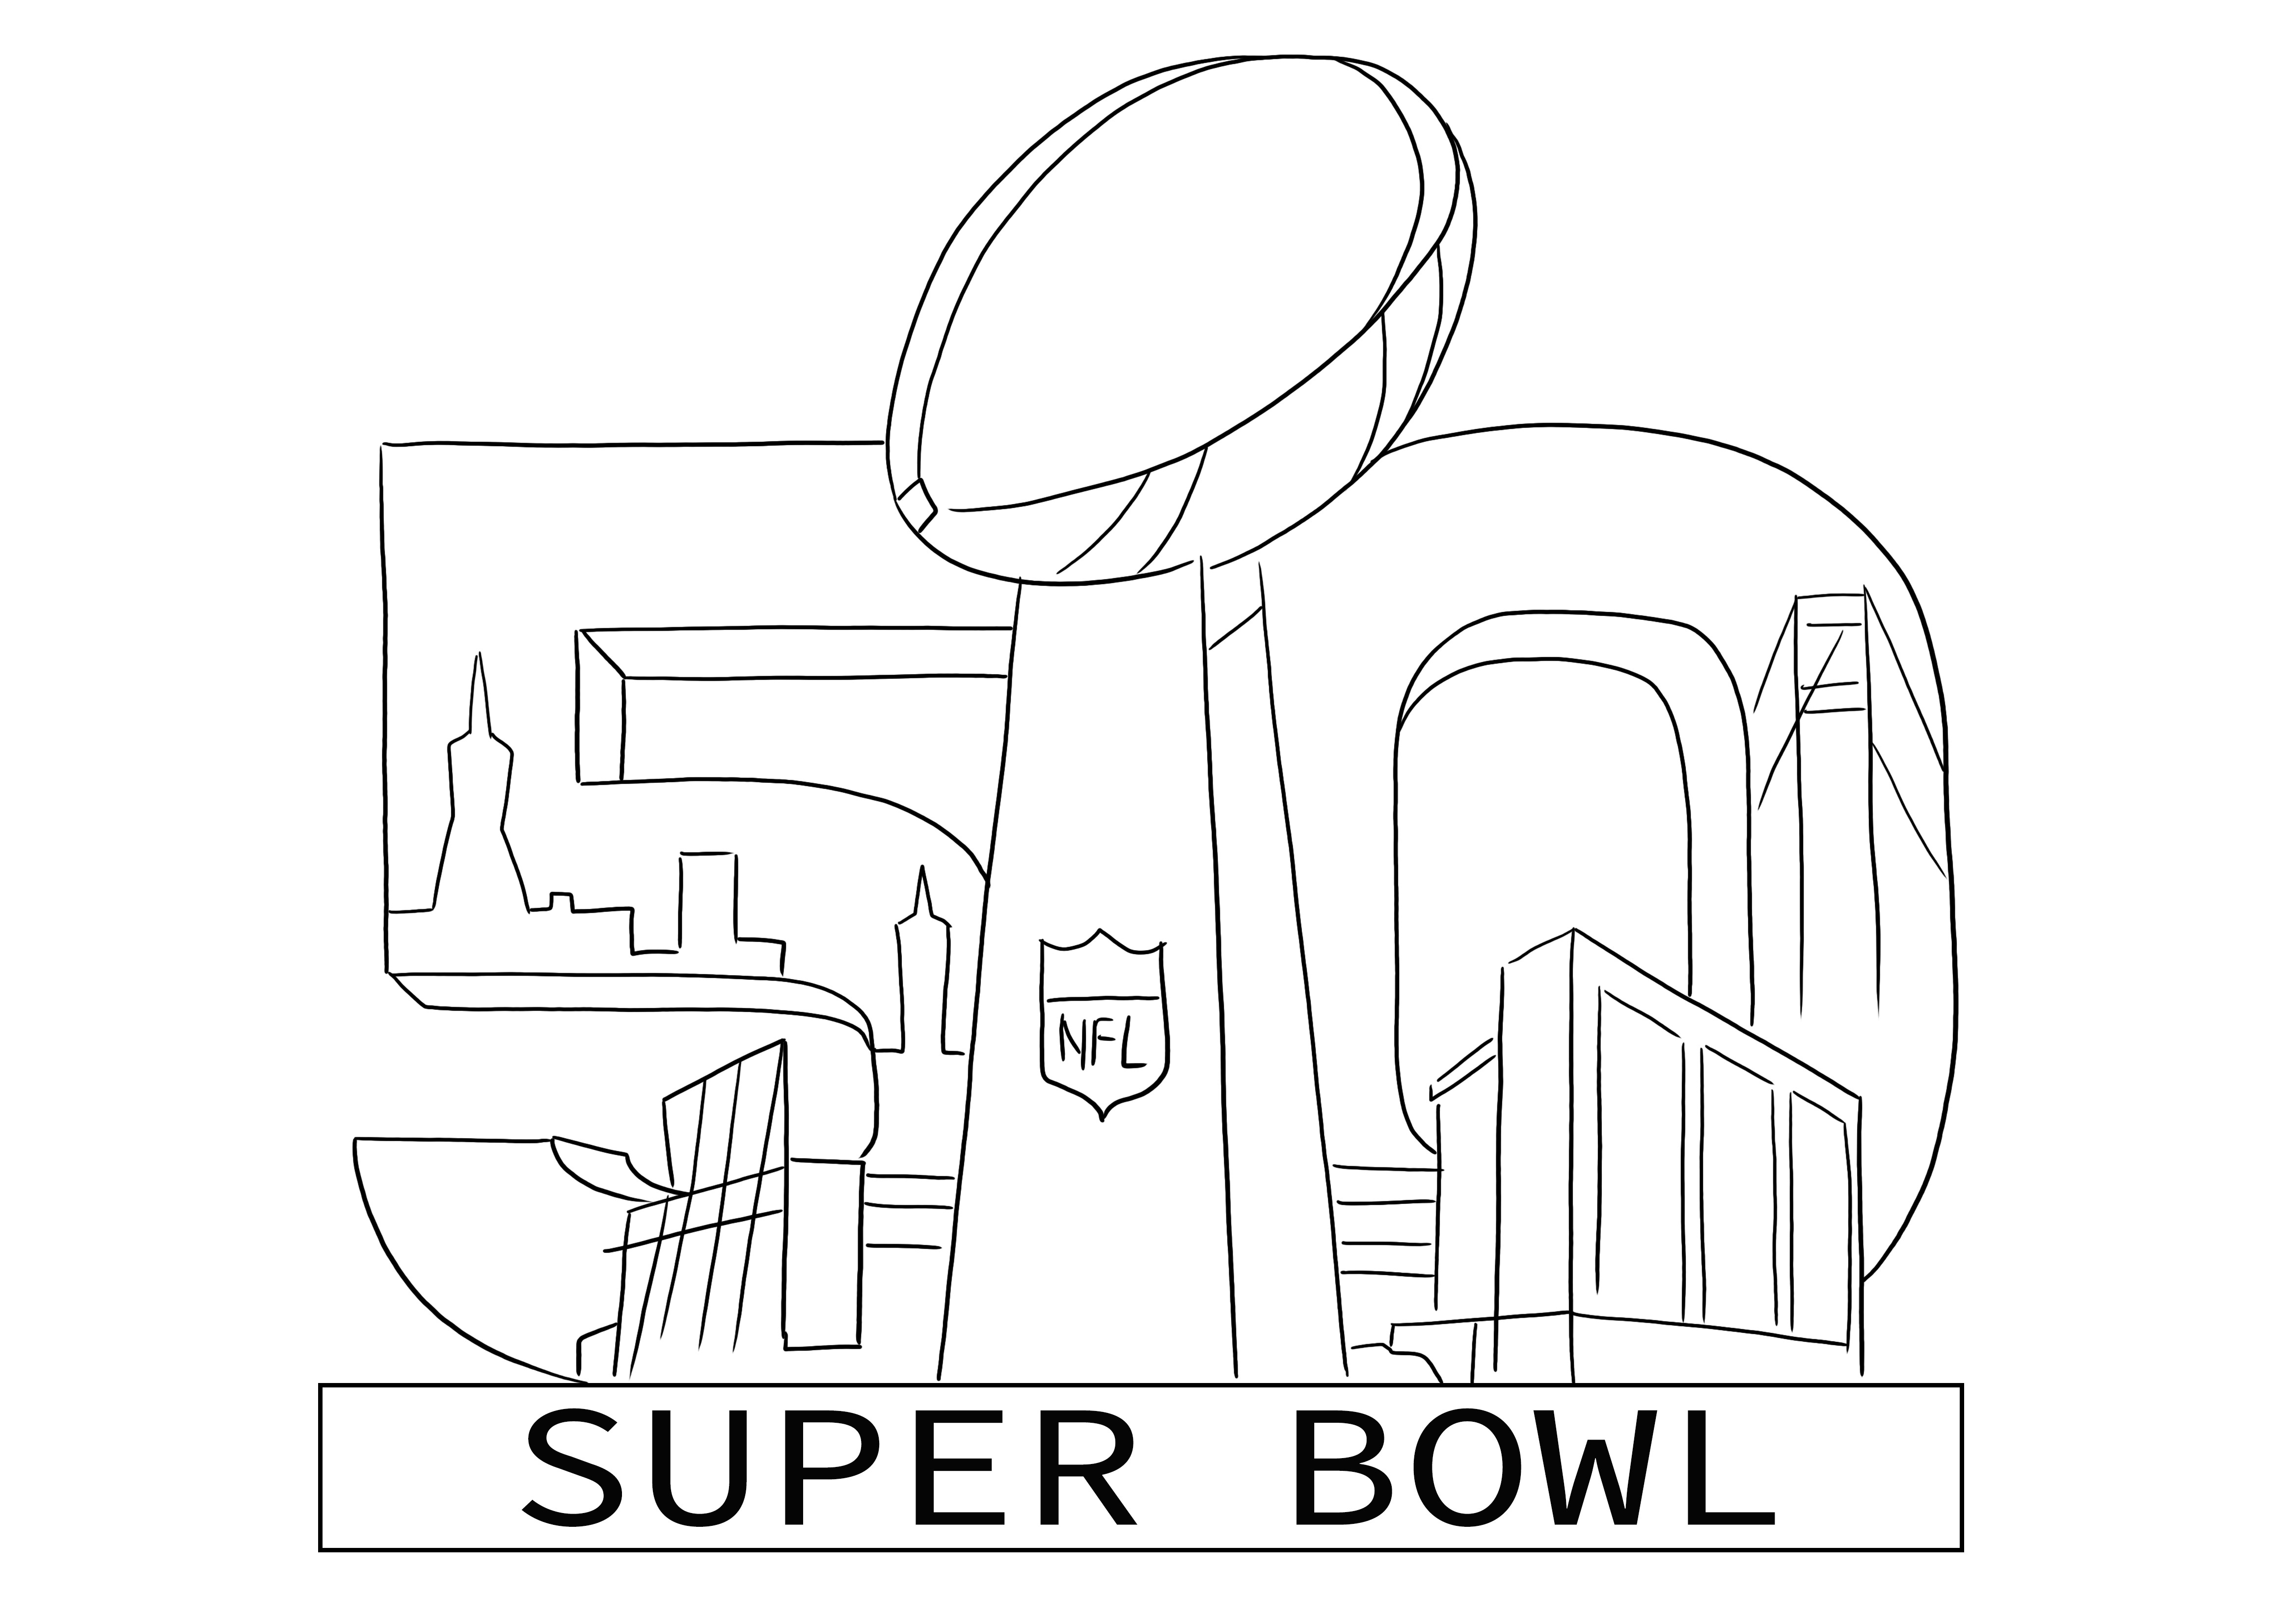 Super Bowl 2016 värityslogo ilmaiseksi tulostettavaksi tai ladattavaksi lapsille